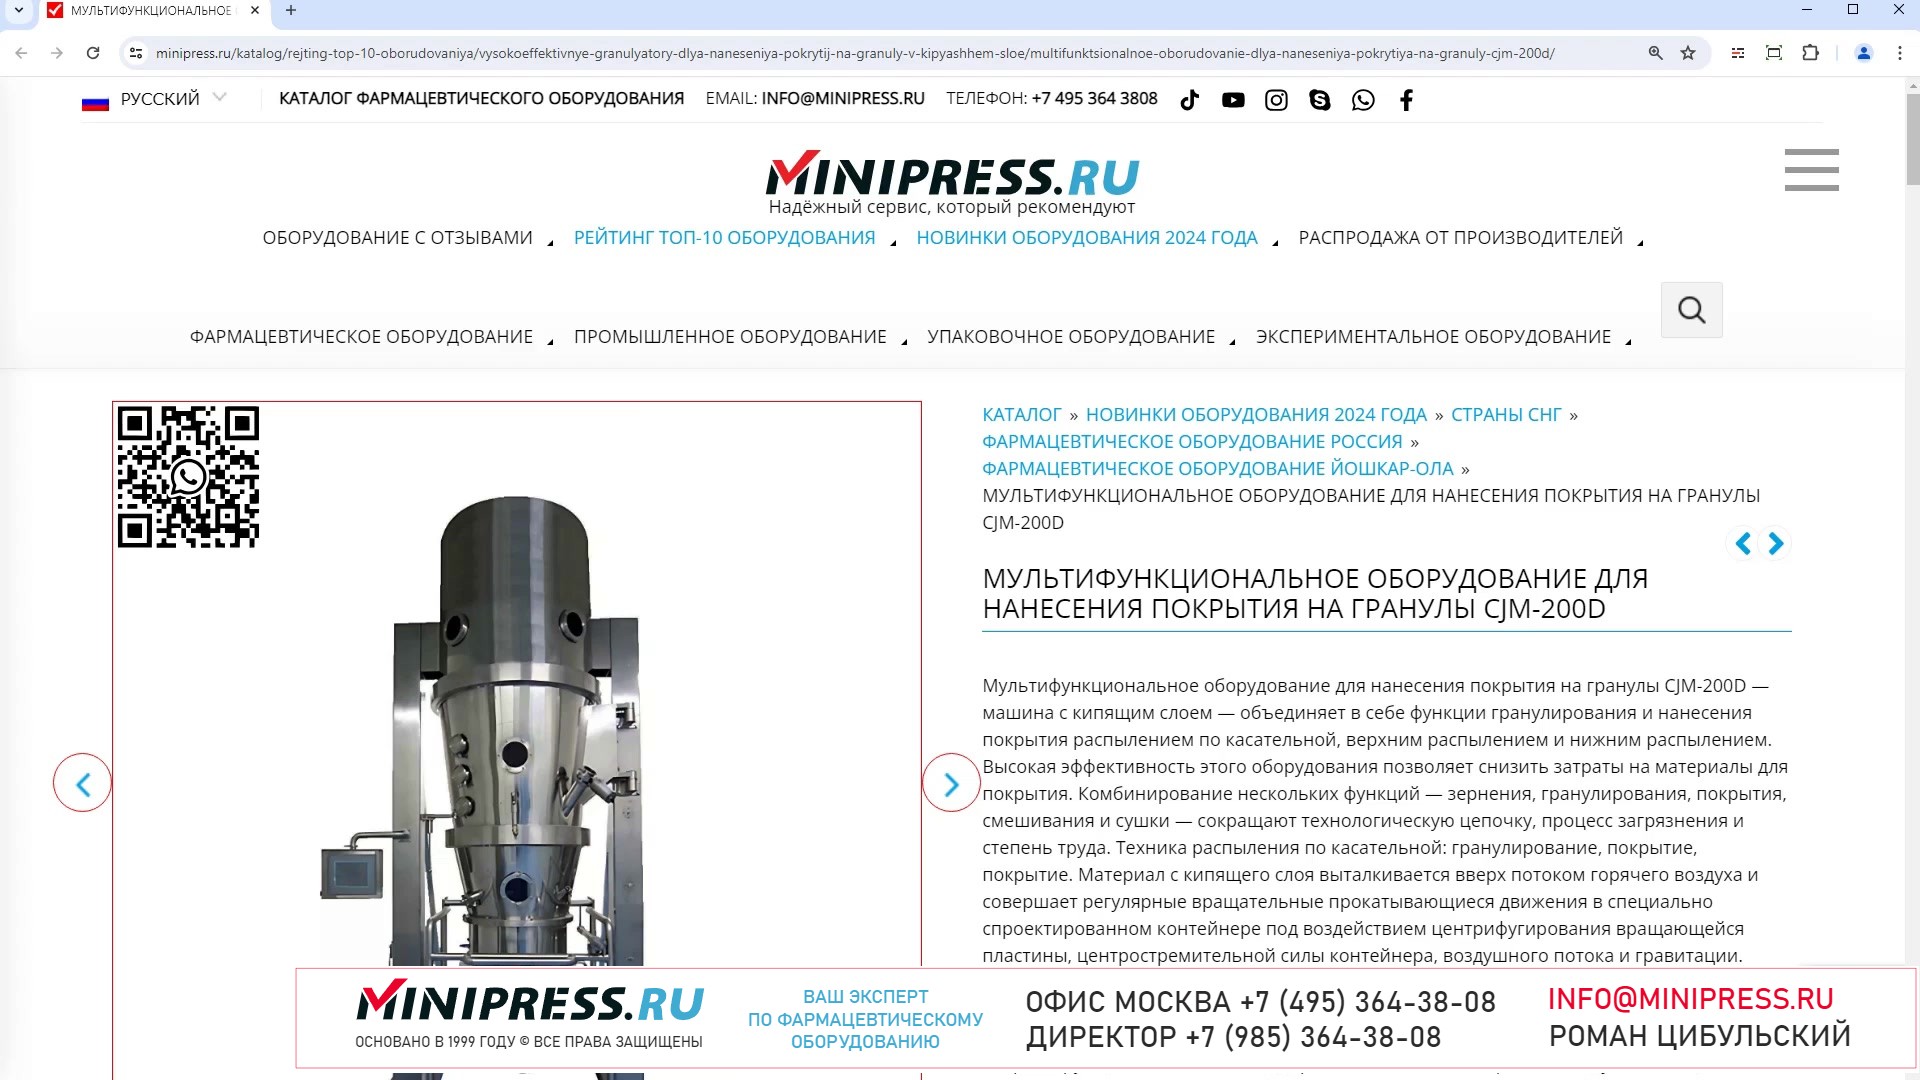 Minipress.ru Мультифункциональное оборудование для нанесения покрытия на гранулы CJM-200D